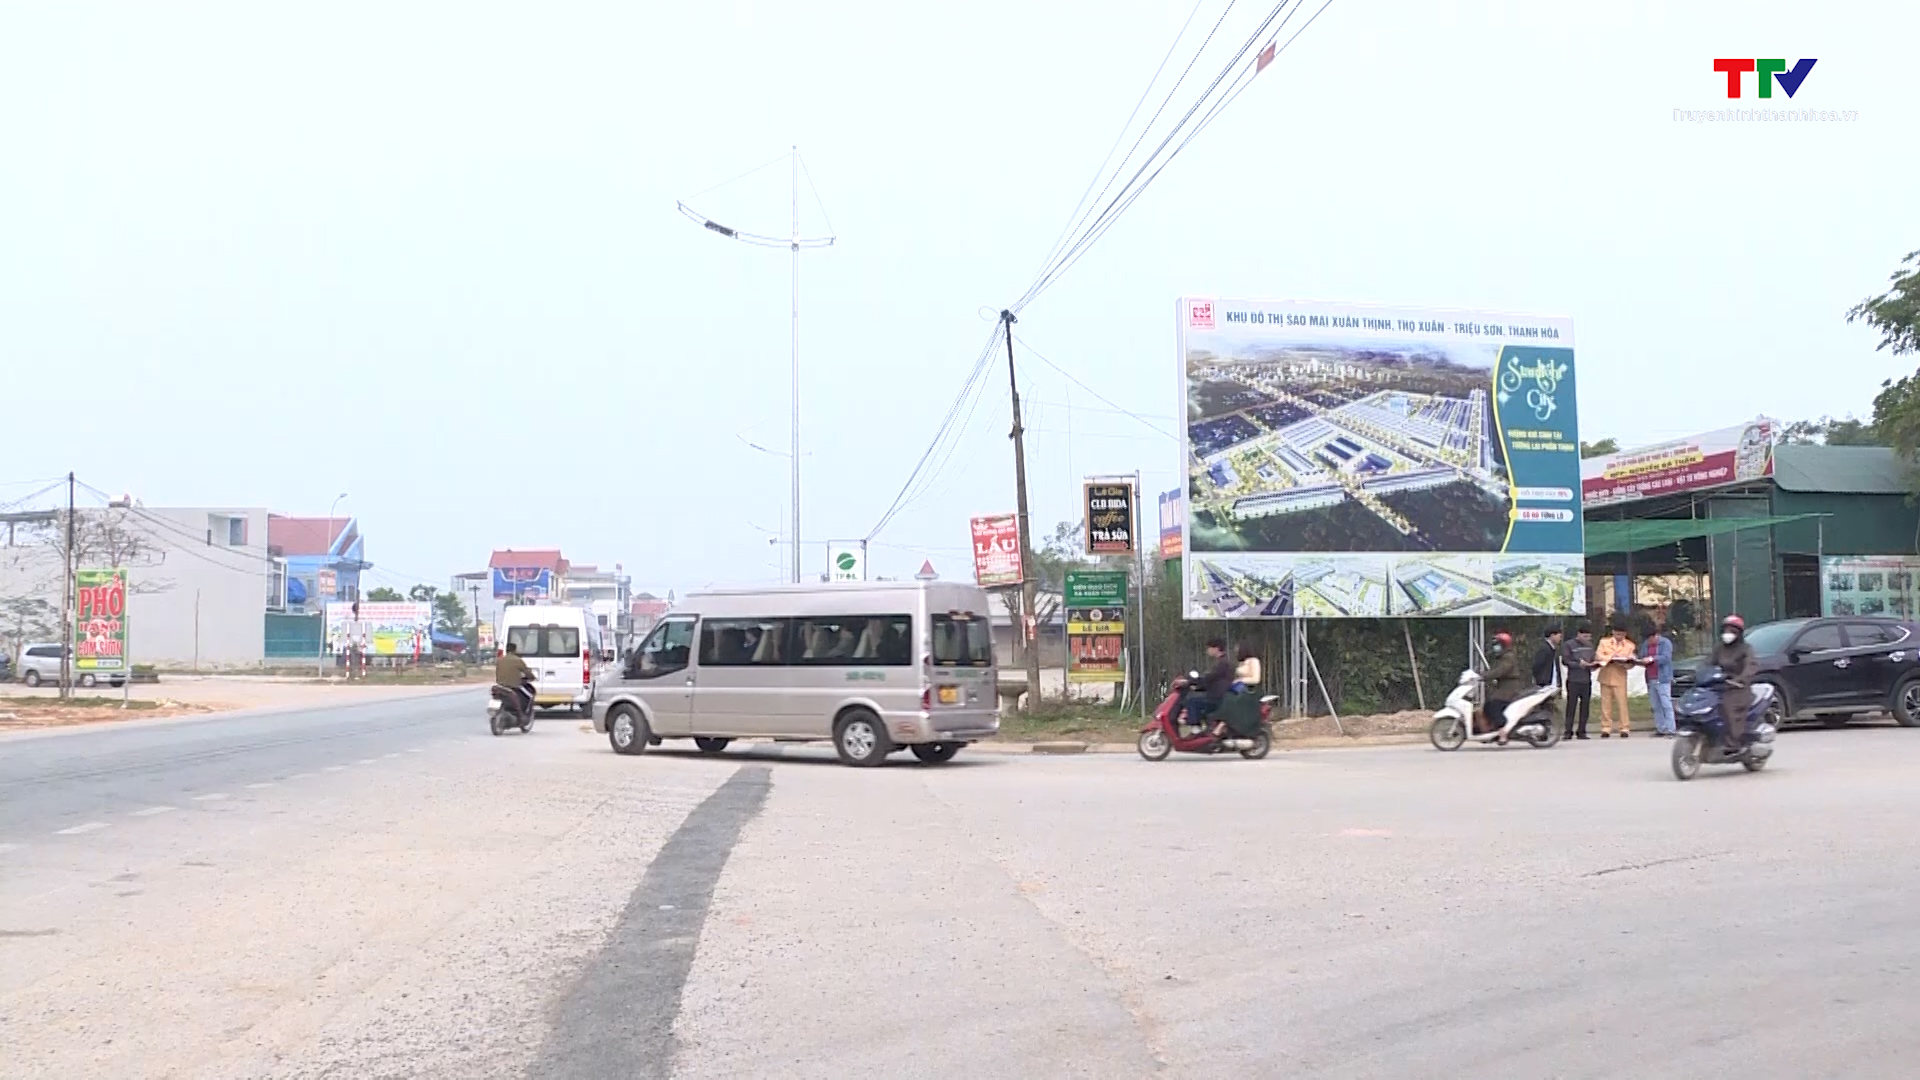 Huyện Triệu Sơn tăng cường các giải pháp xoá bỏ điểm đen, điểm tiềm ẩn tai nạn giao thông - Ảnh 2.